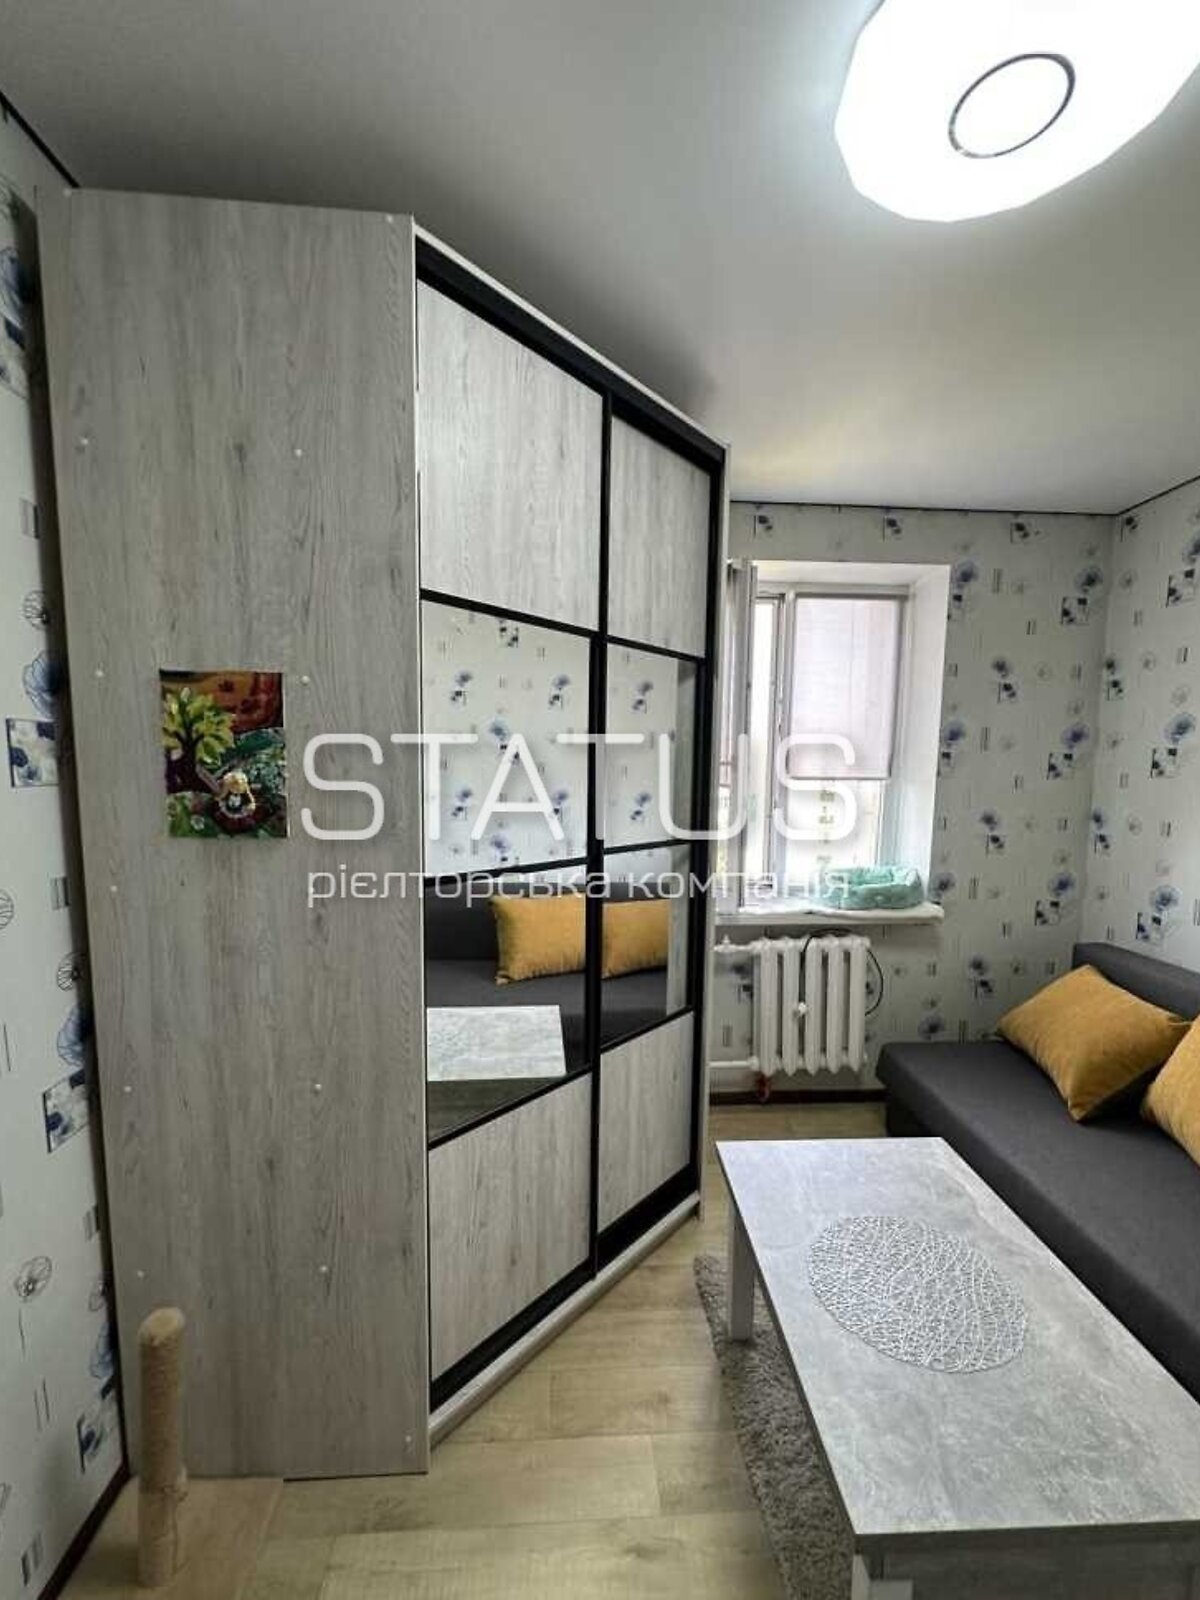 Комната в Полтаве, на шоссе Киевское 56 в районе Алмазный на продажу фото 1